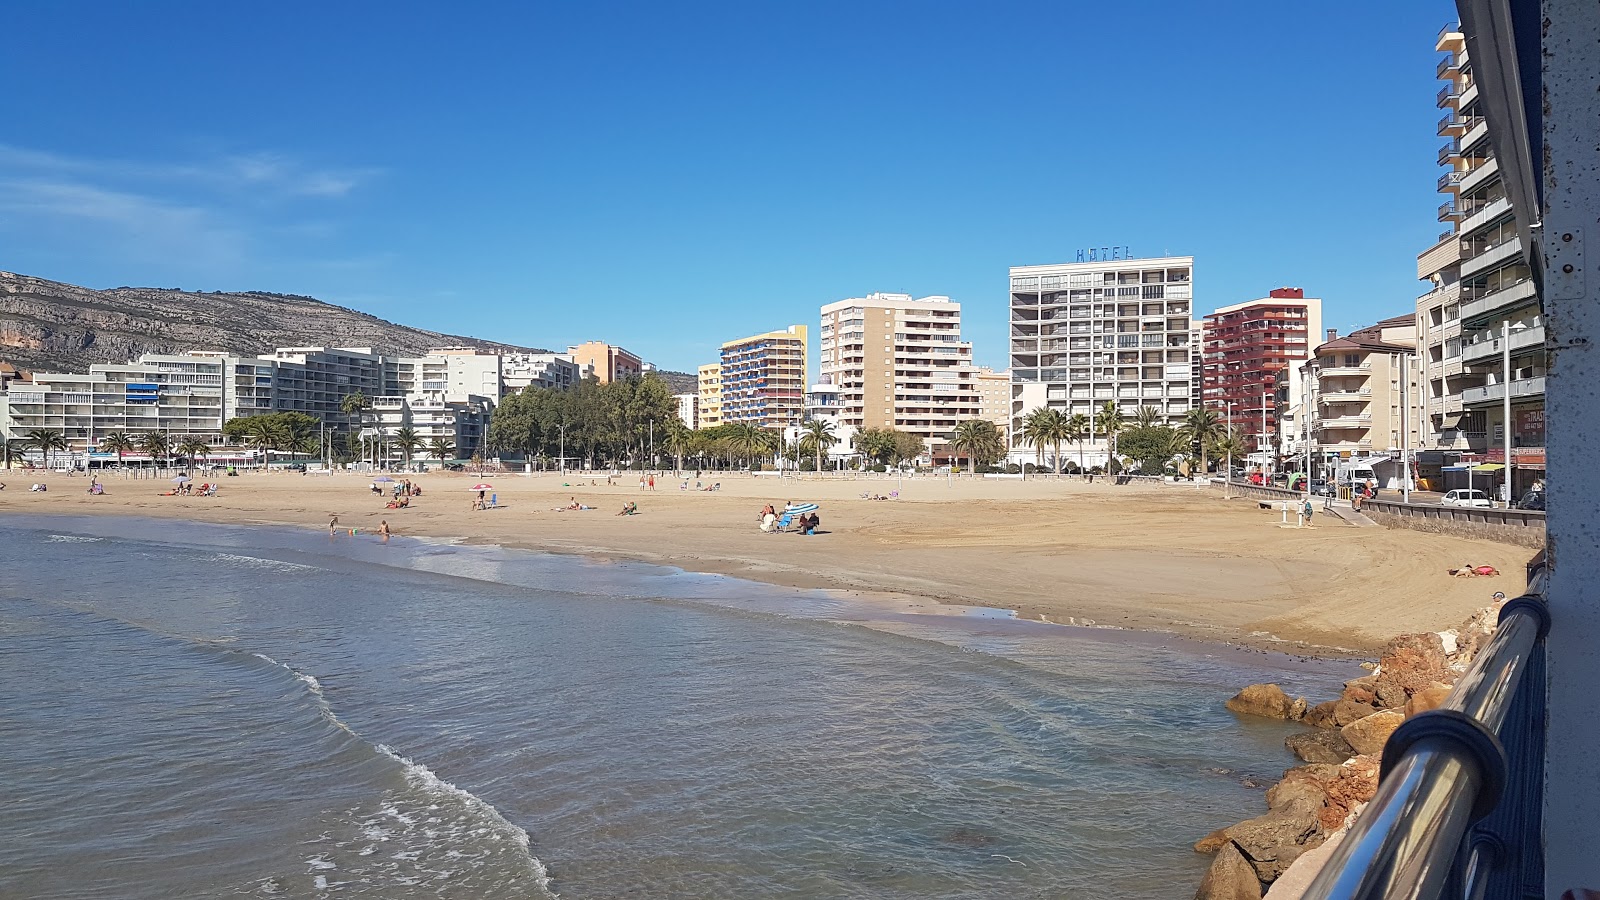 Fotografie cu Playa de la Concha cu o suprafață de nisip maro